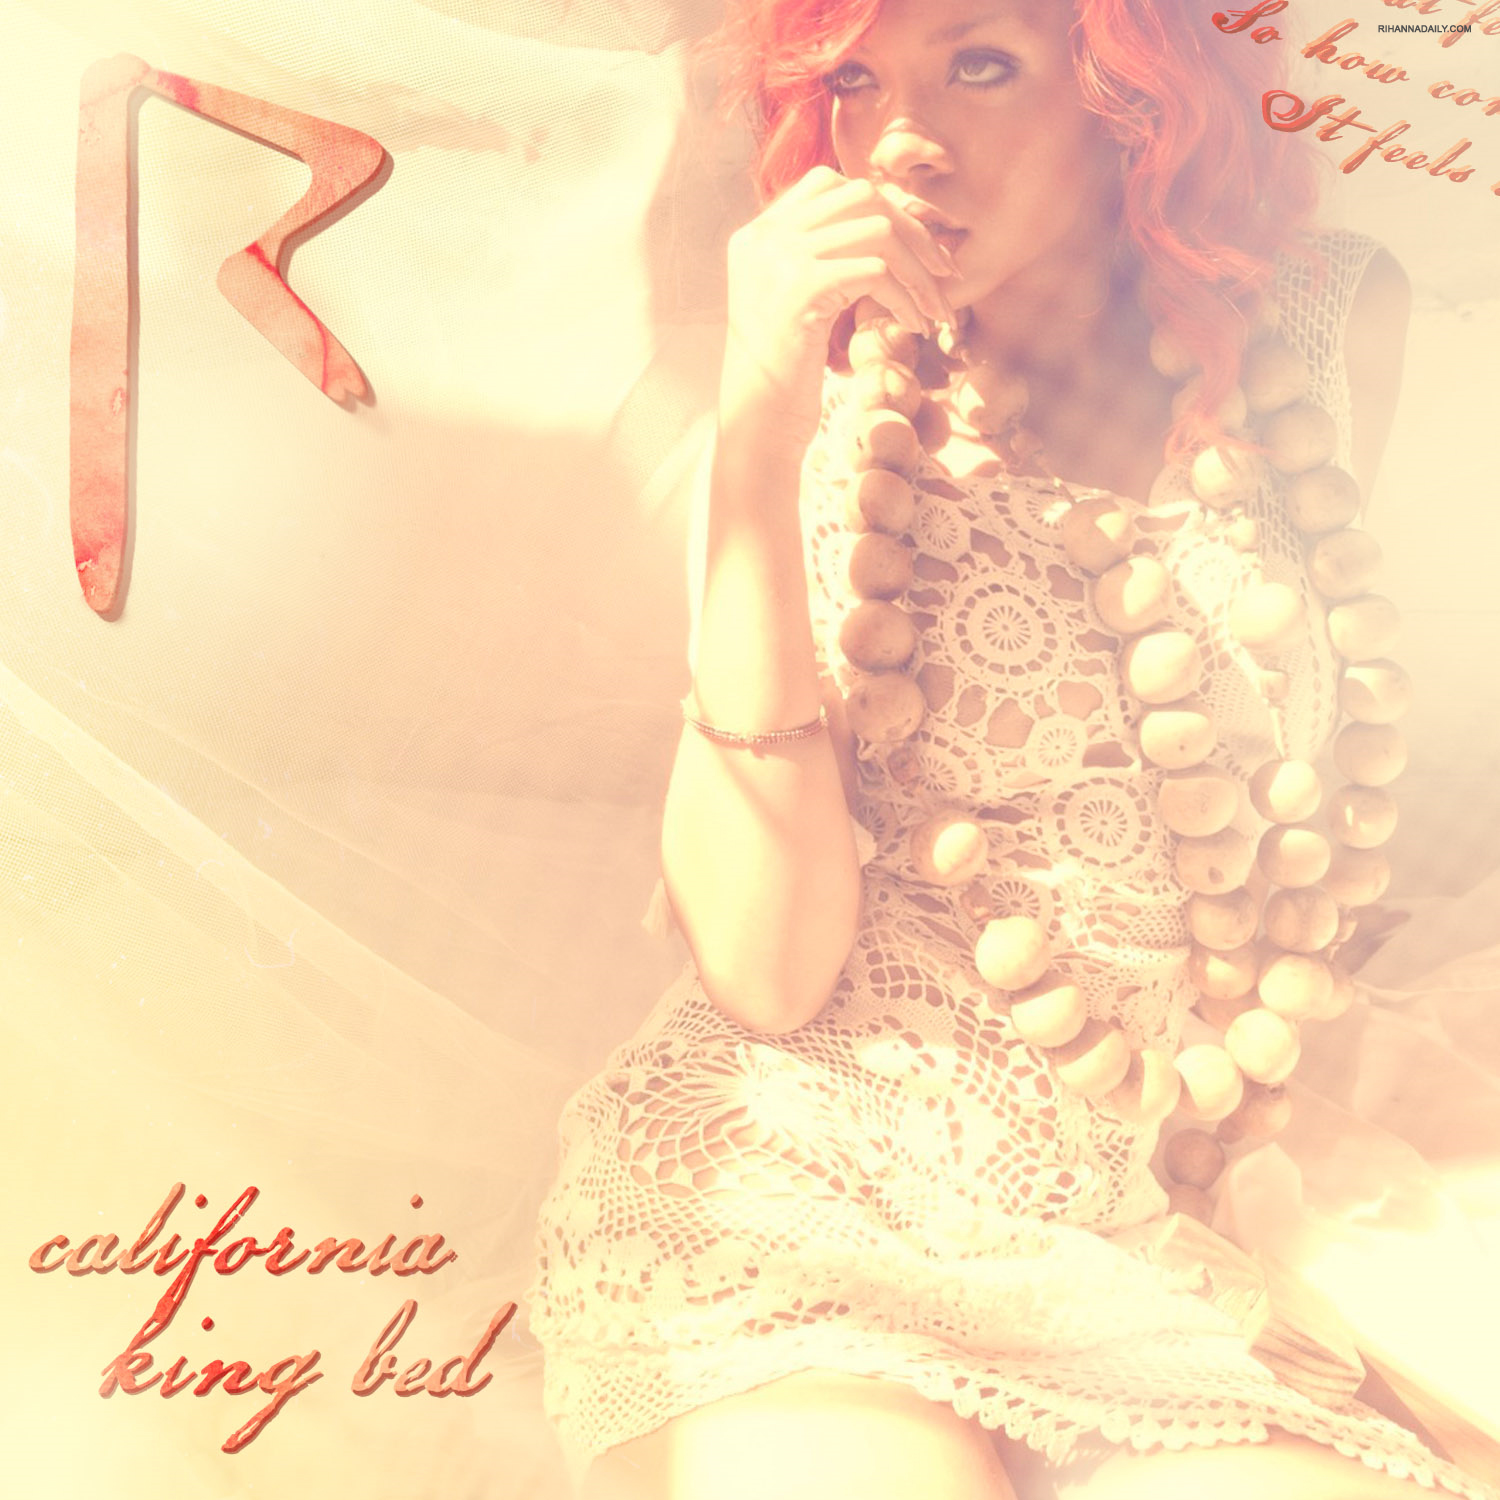 http://3.bp.blogspot.com/-6ff5kWH_heQ/TckBufNT7XI/AAAAAAAABd4/0blhiqede9A/s1600/Rihanna+California+King+Bed.png